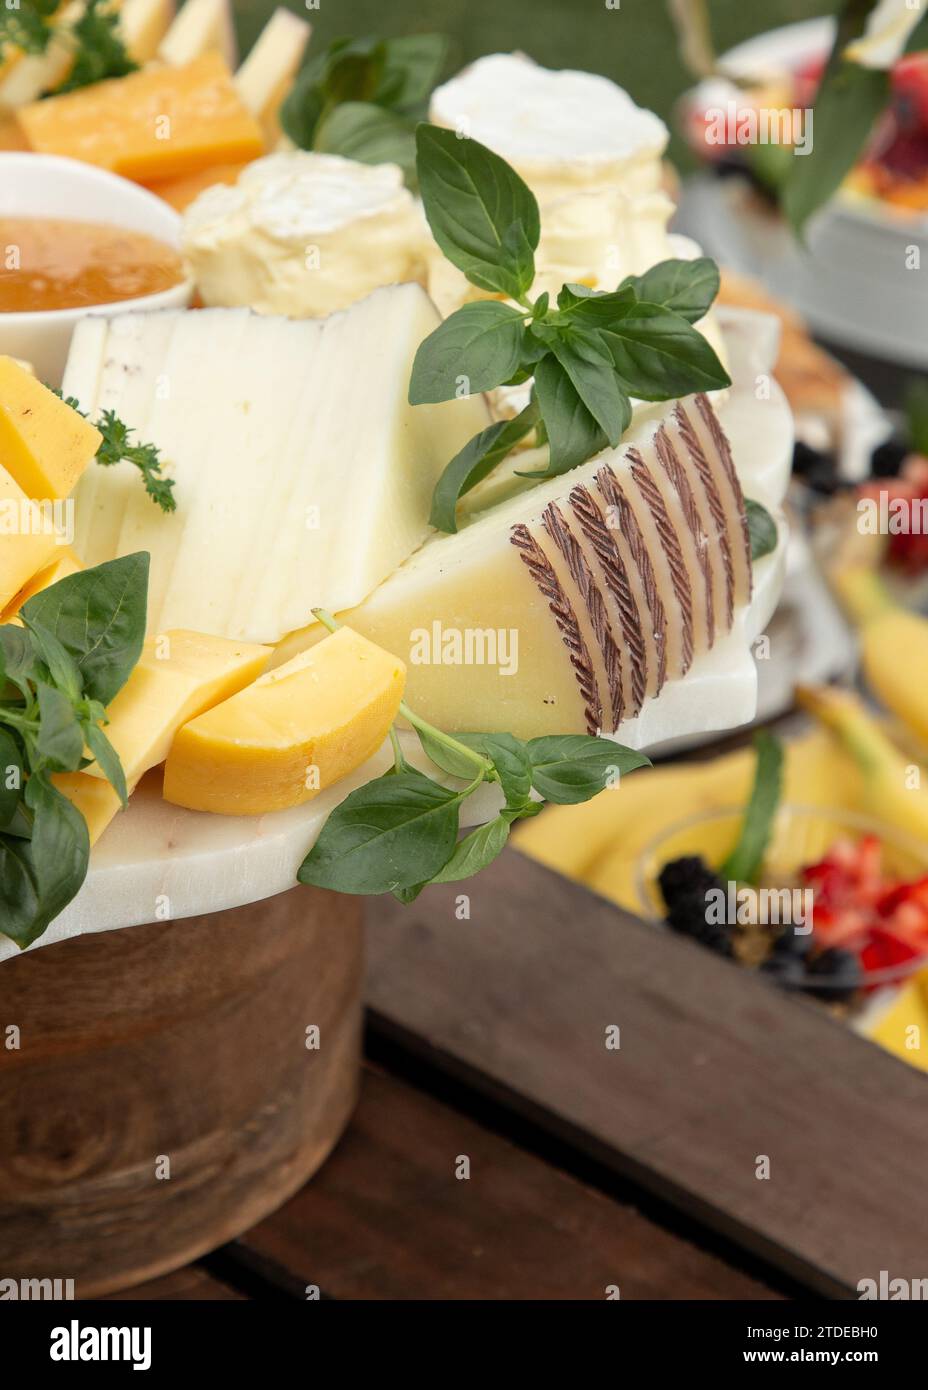 Schickes Event mit Käse-Wurstwaren Stockfoto